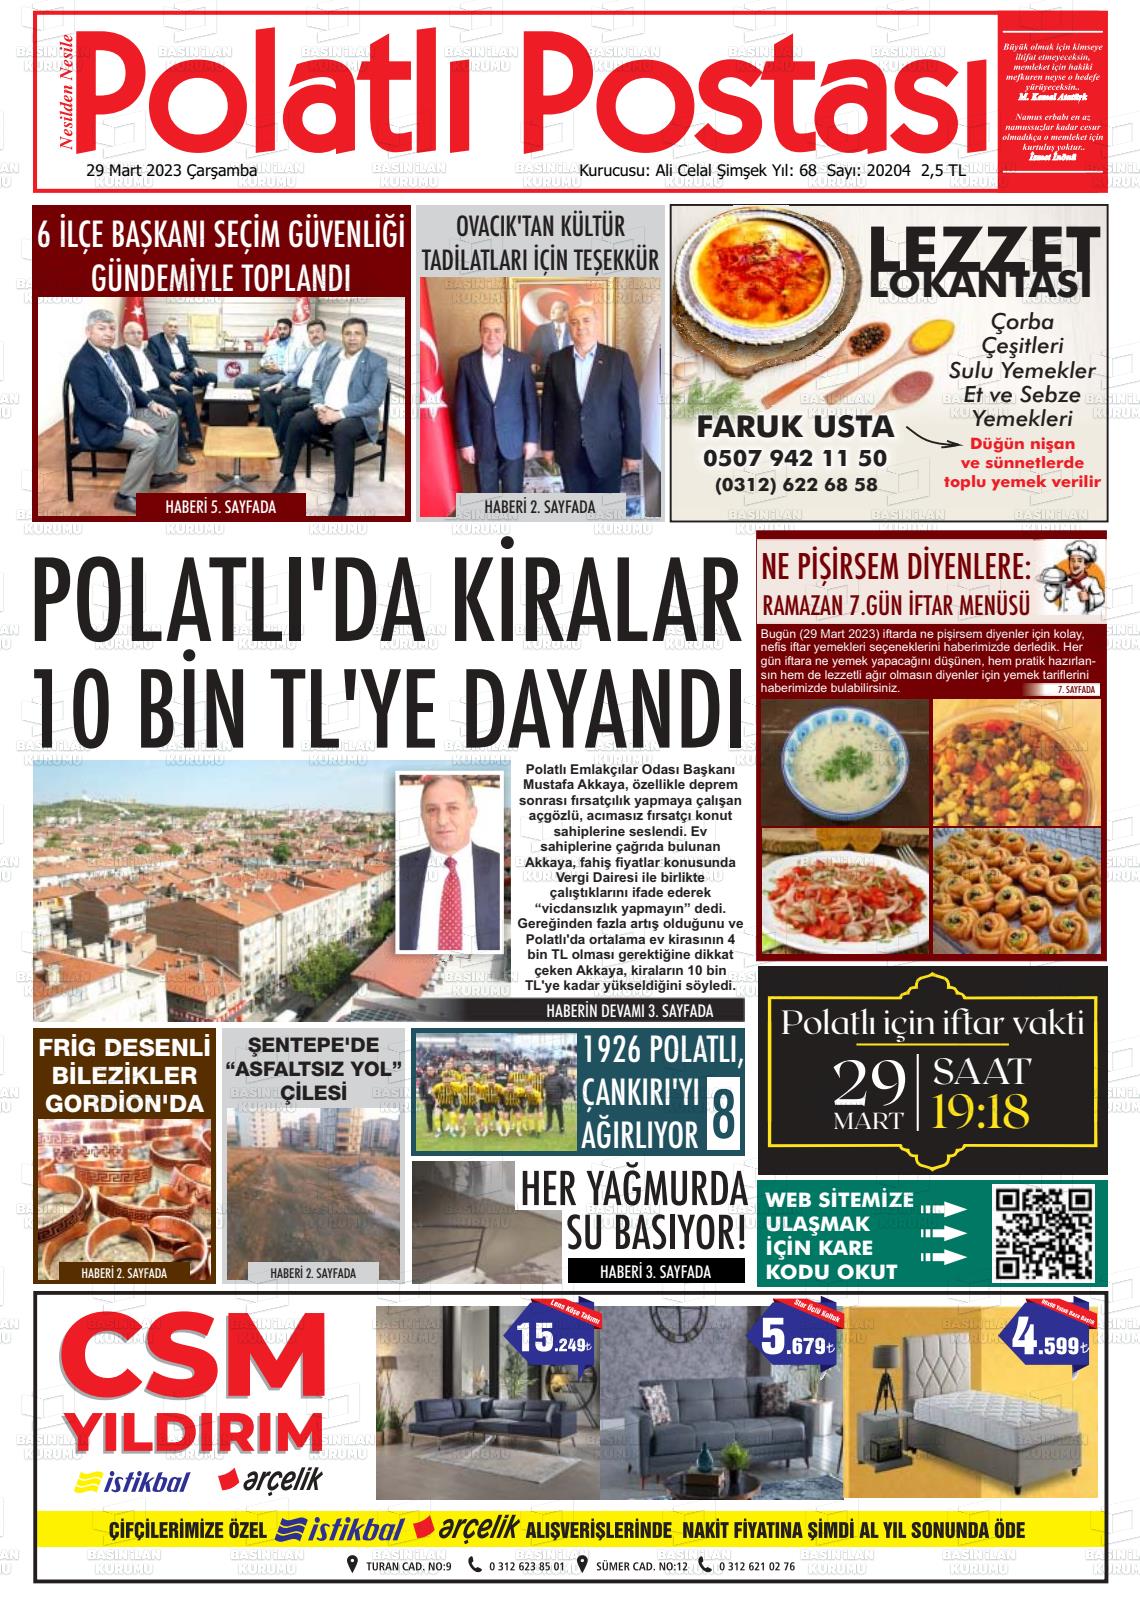 29 Mart 2023 Polatlı Postası Gazete Manşeti